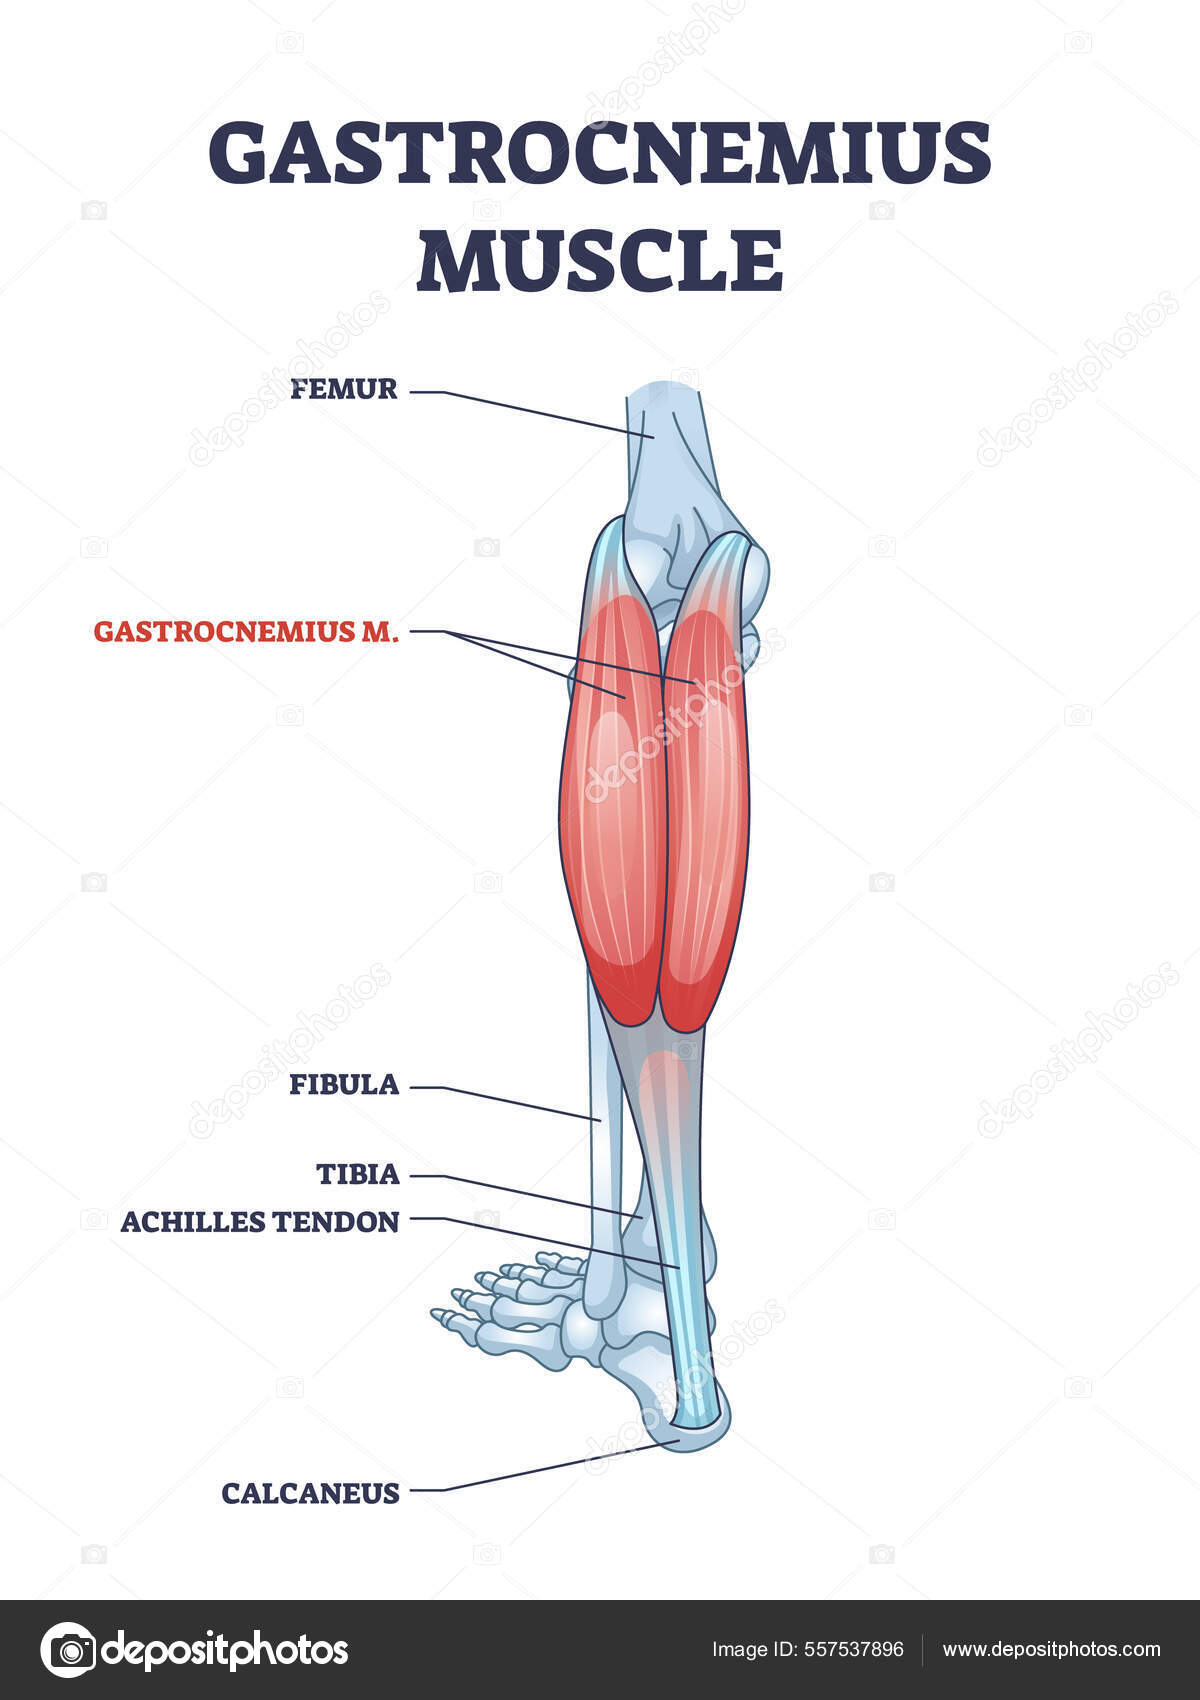 脚と足首の解剖学的構造を持つガストロネミウス筋の概要図 — ストックベクター ©VectorMine 557537896